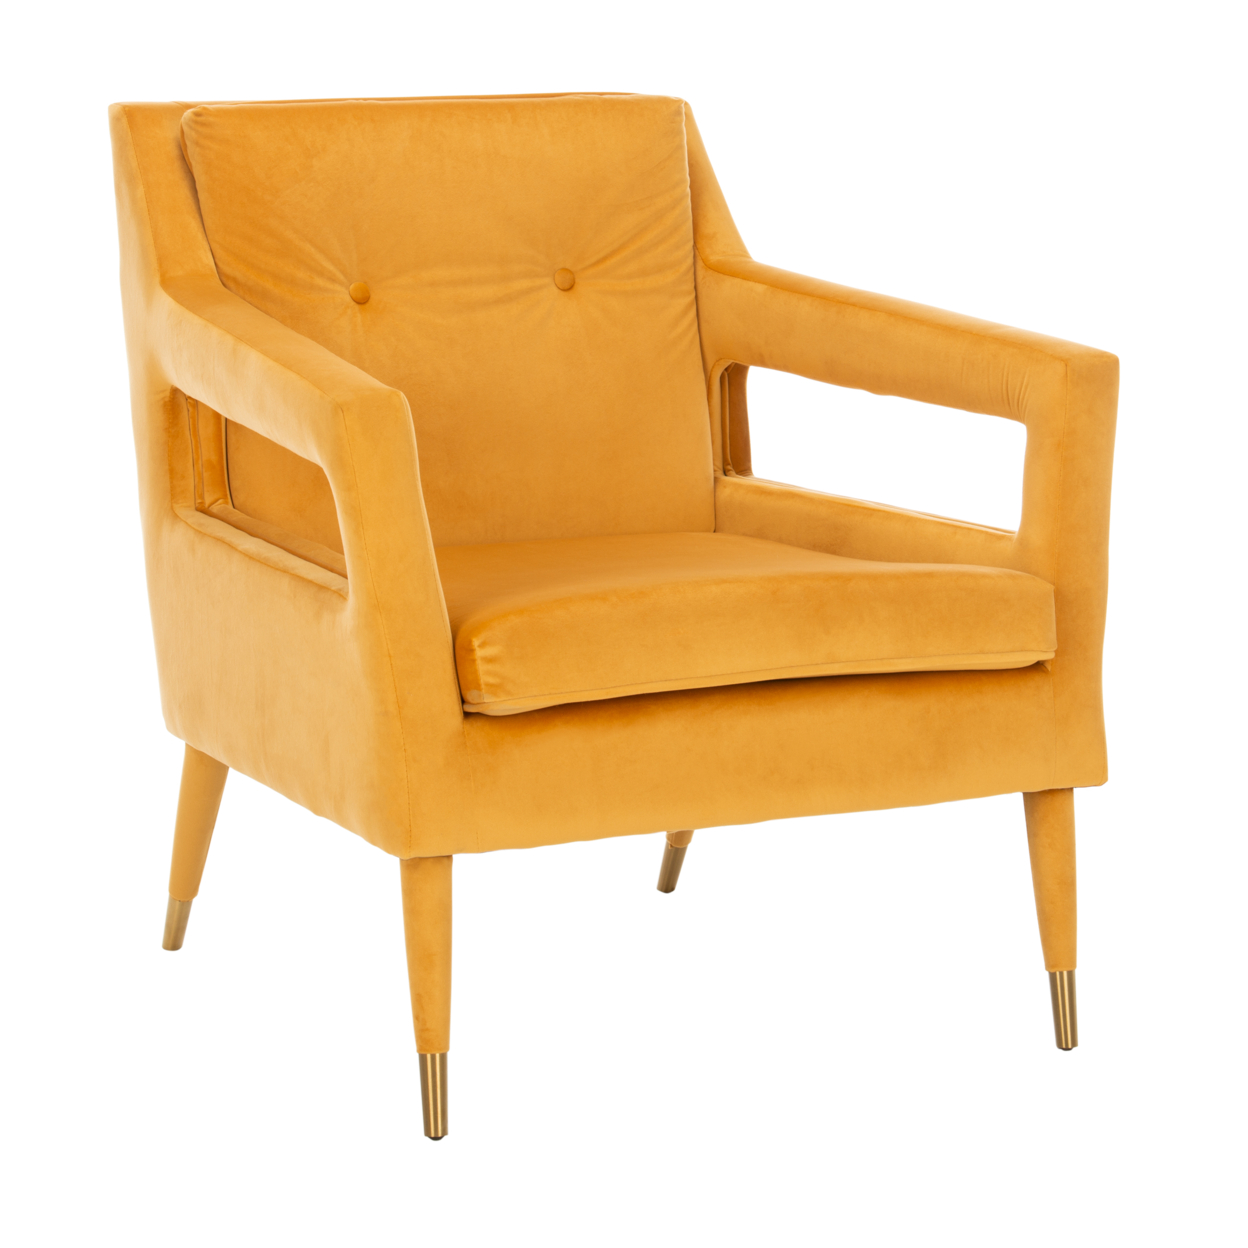 SAFAVIEH Mara Tufted Accent Chair Marigold / Gold